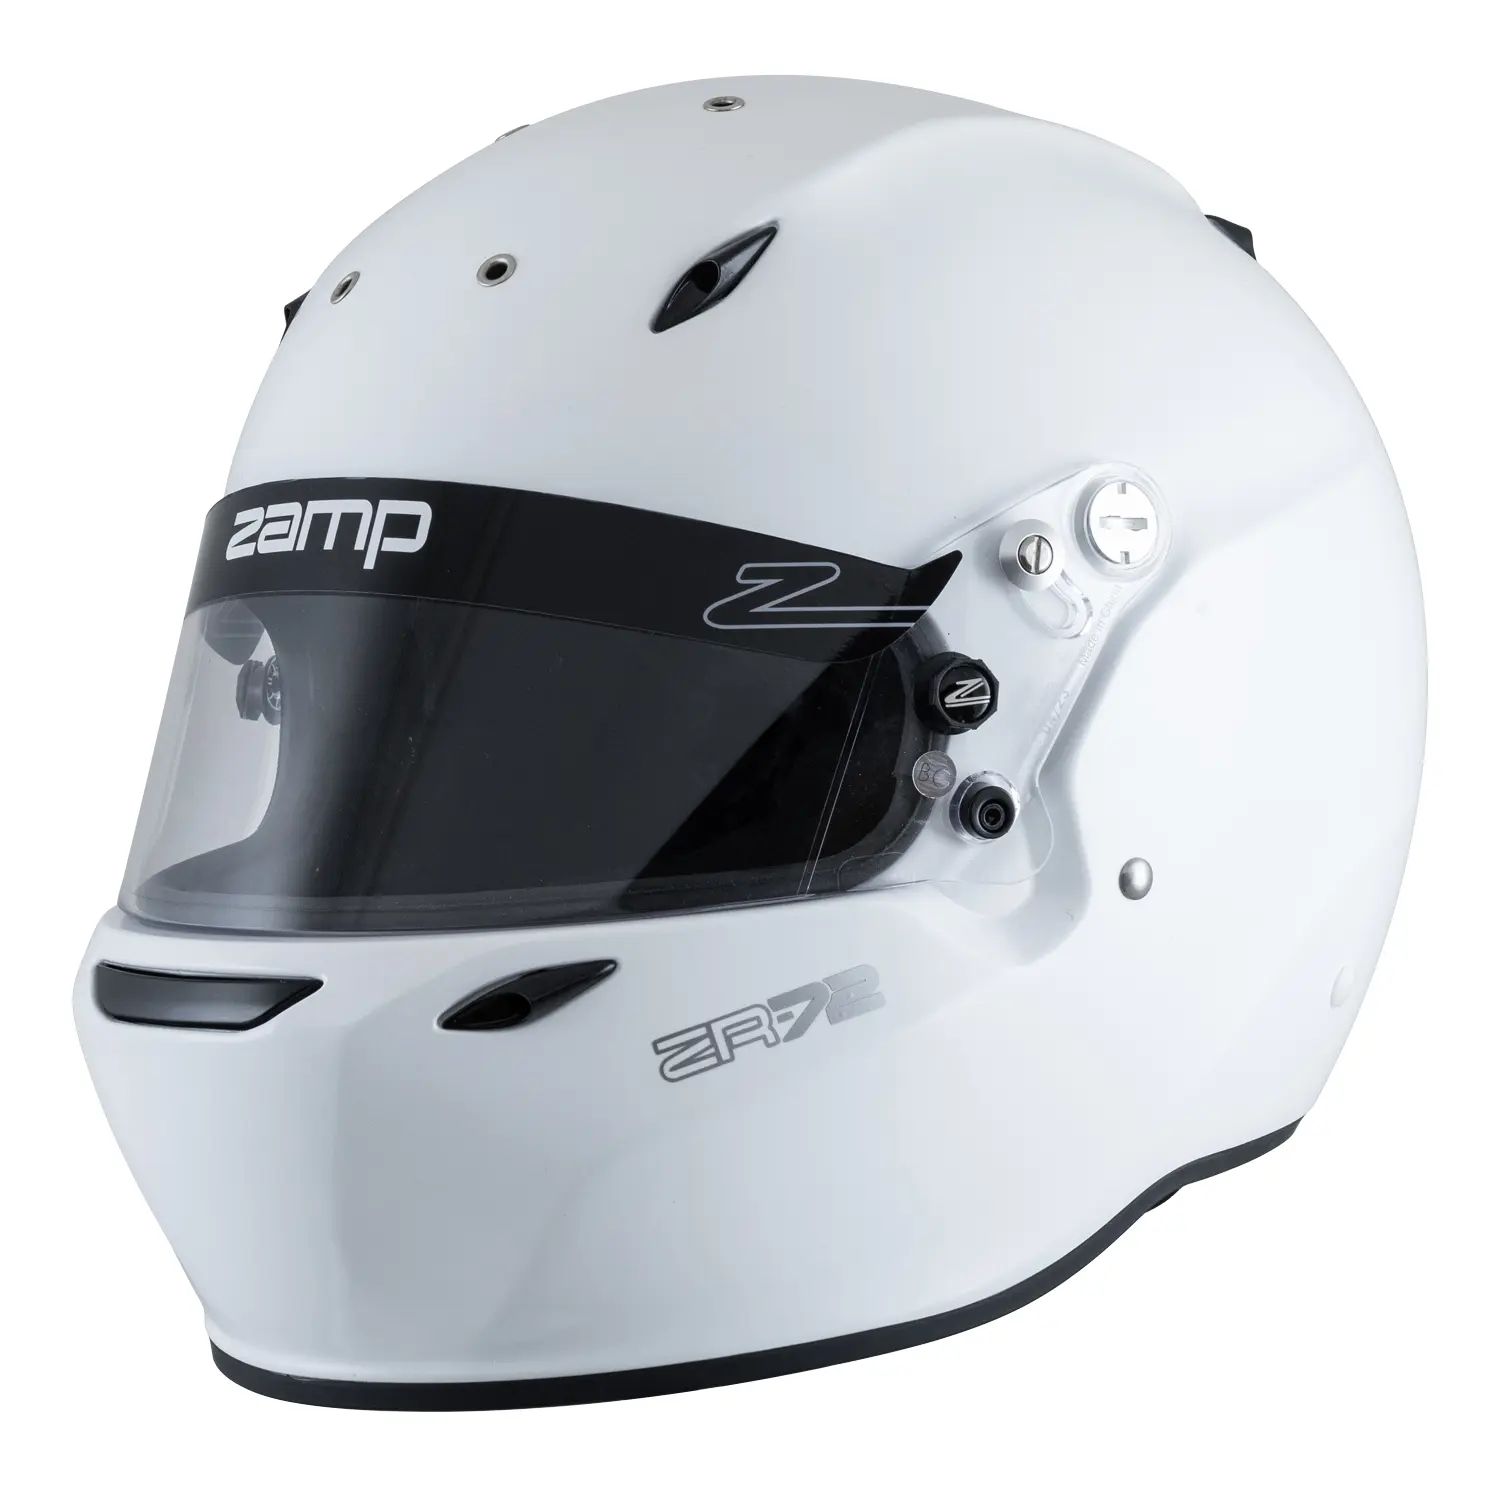 ZR-72 Helmet